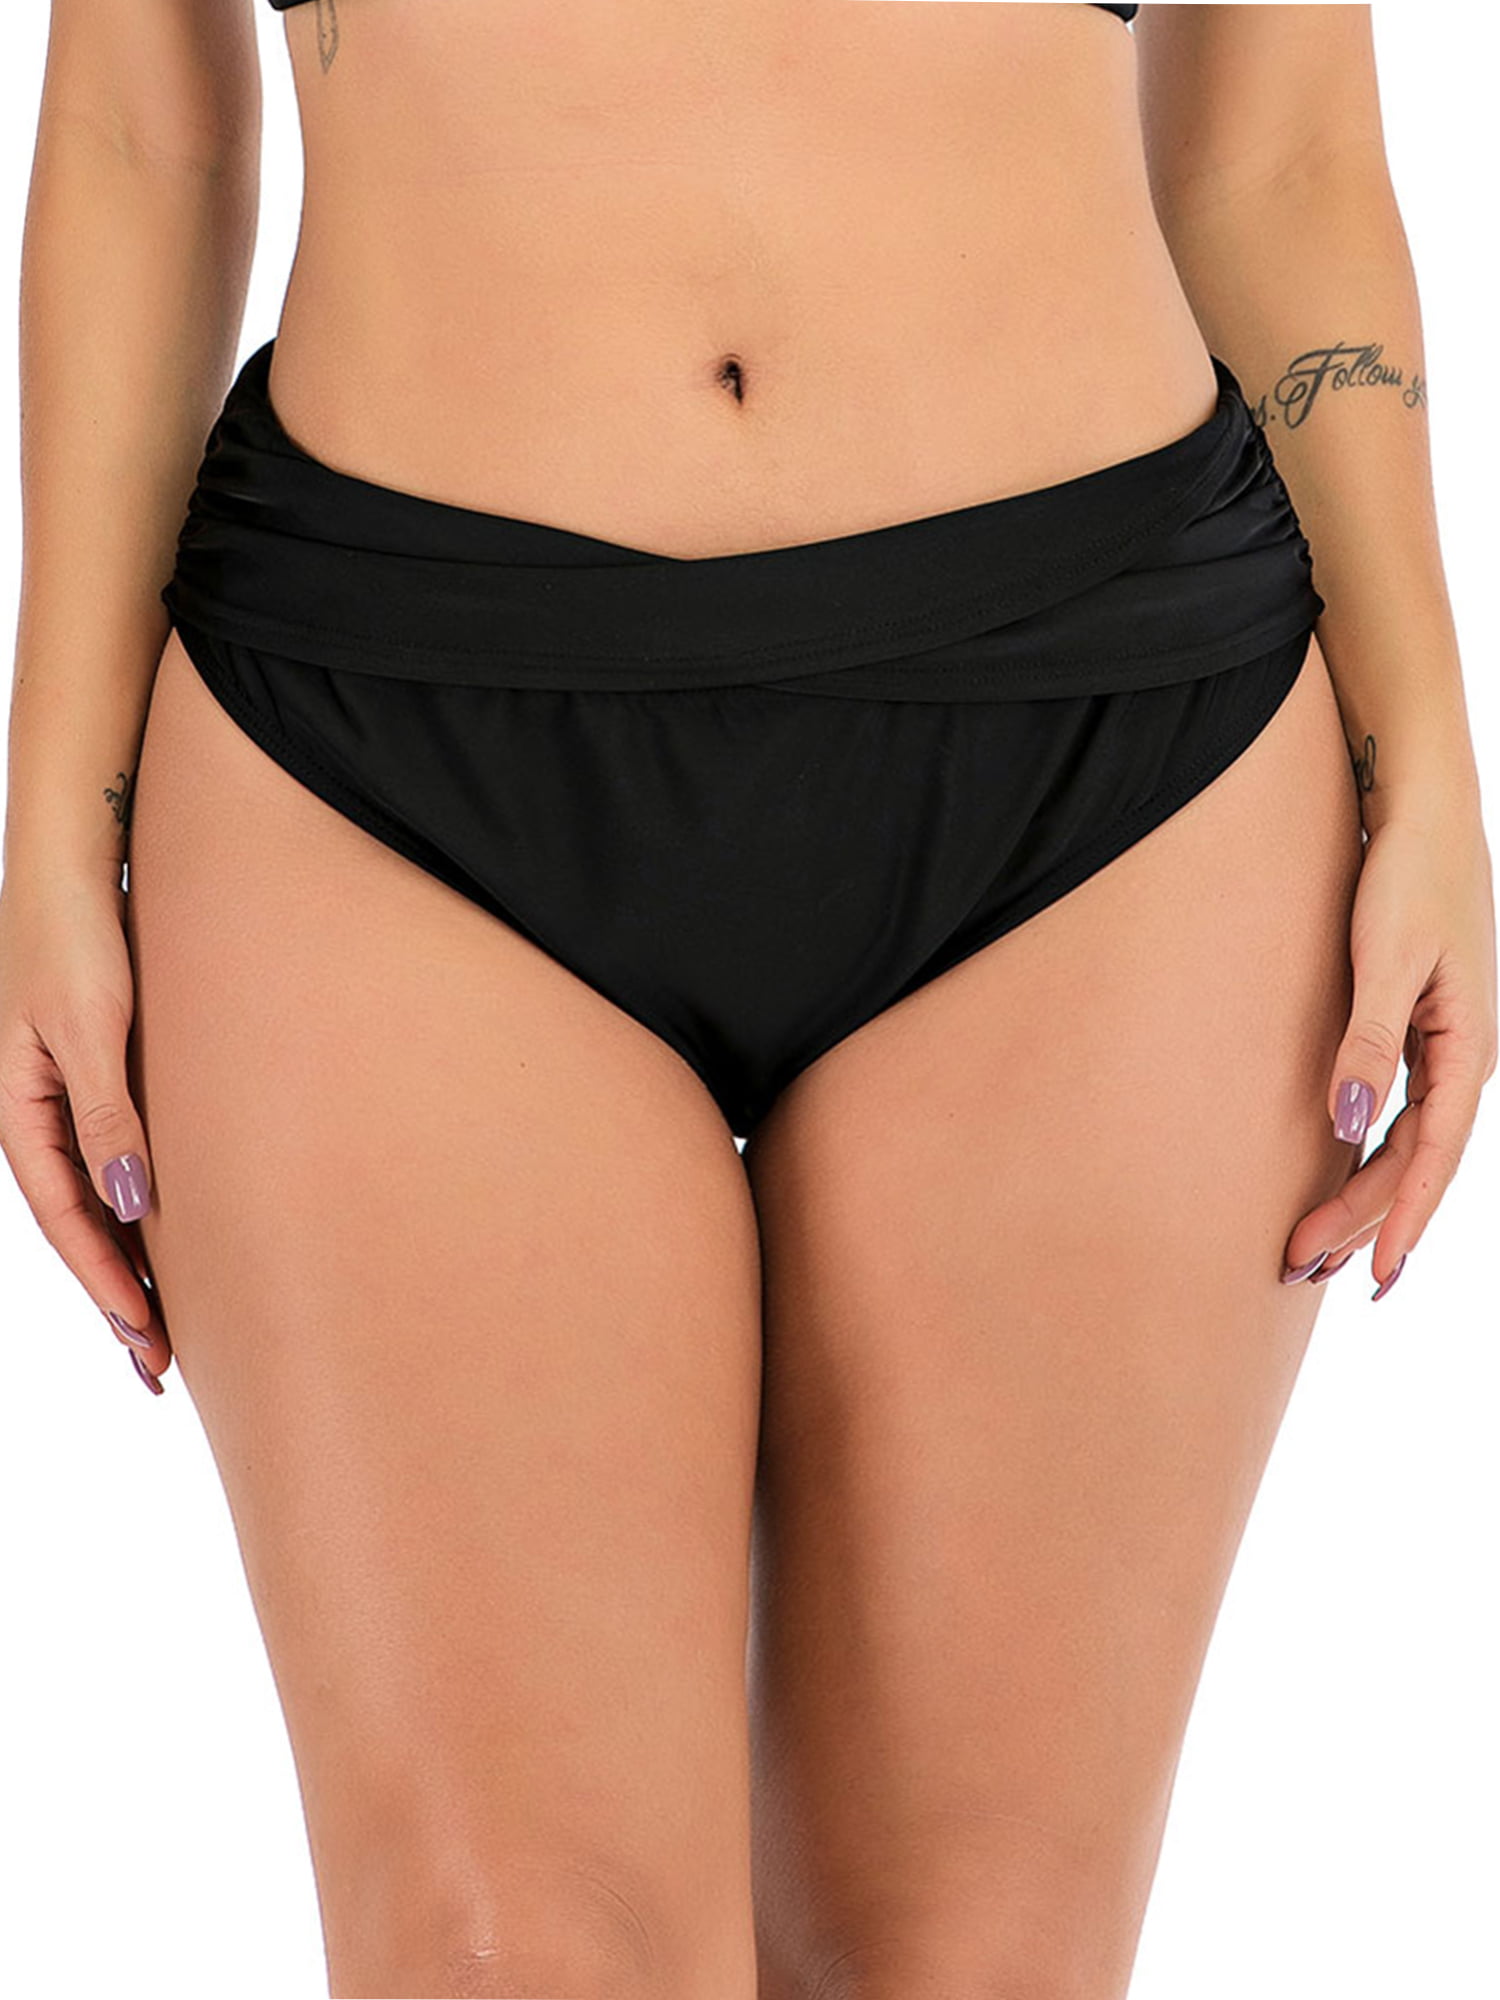 Sayfut Women Low Waisted Bikini Bottoms Ruched Swim Bottom Tummy Control Swimsuit Bottoms